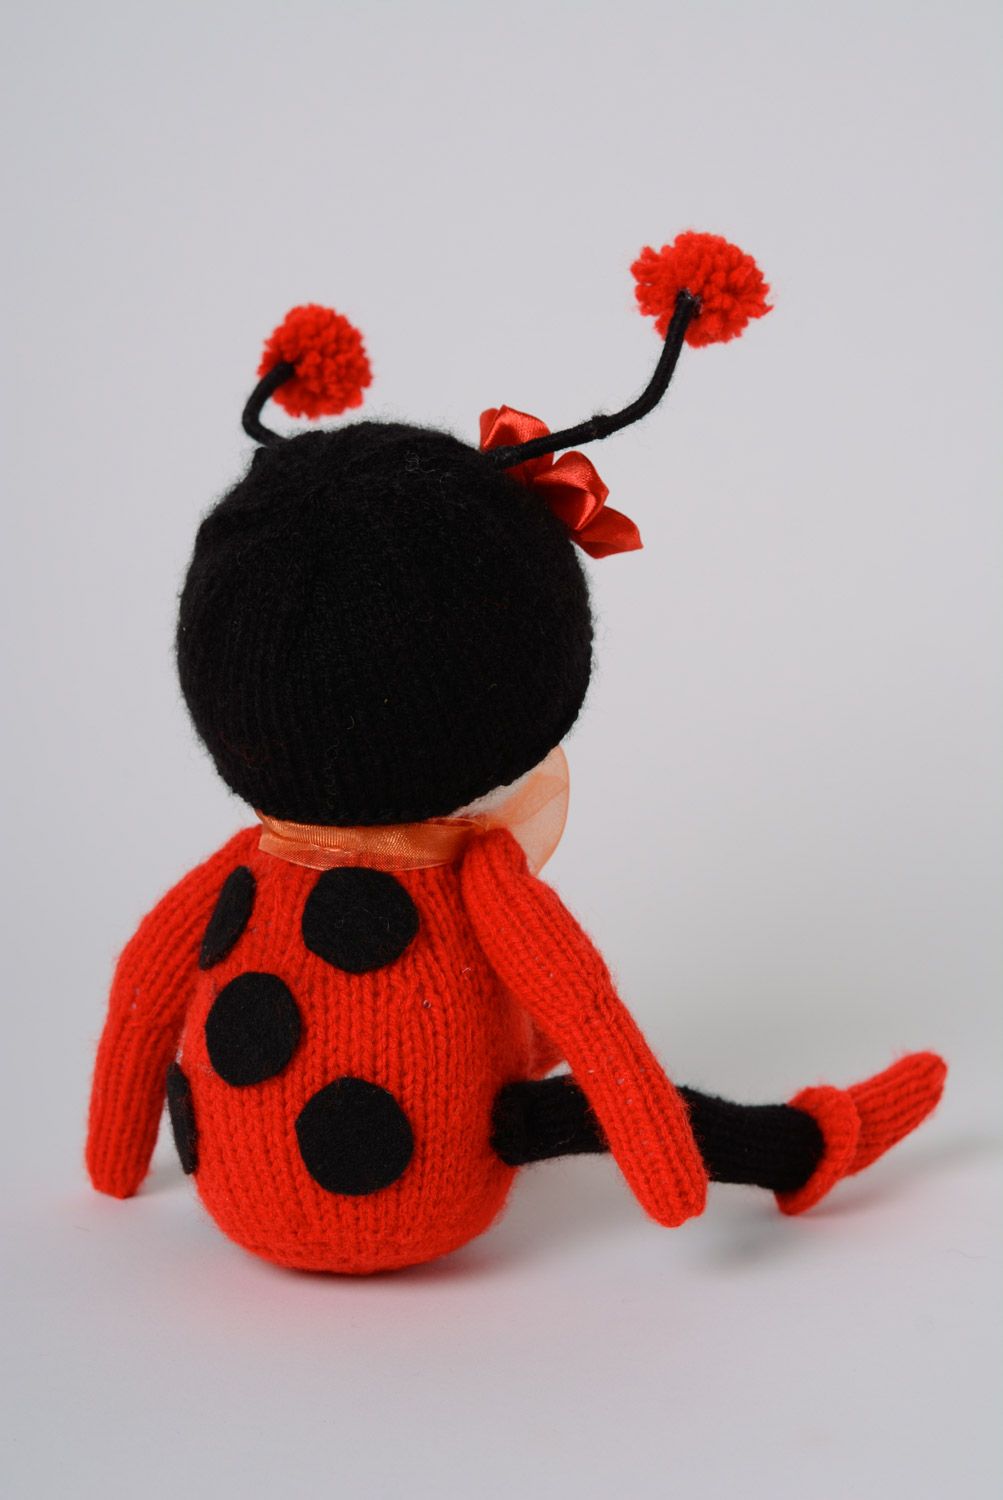 Jouet mou tricoté an acrylique au crochet rouge et noir fait main Coccinelle photo 3